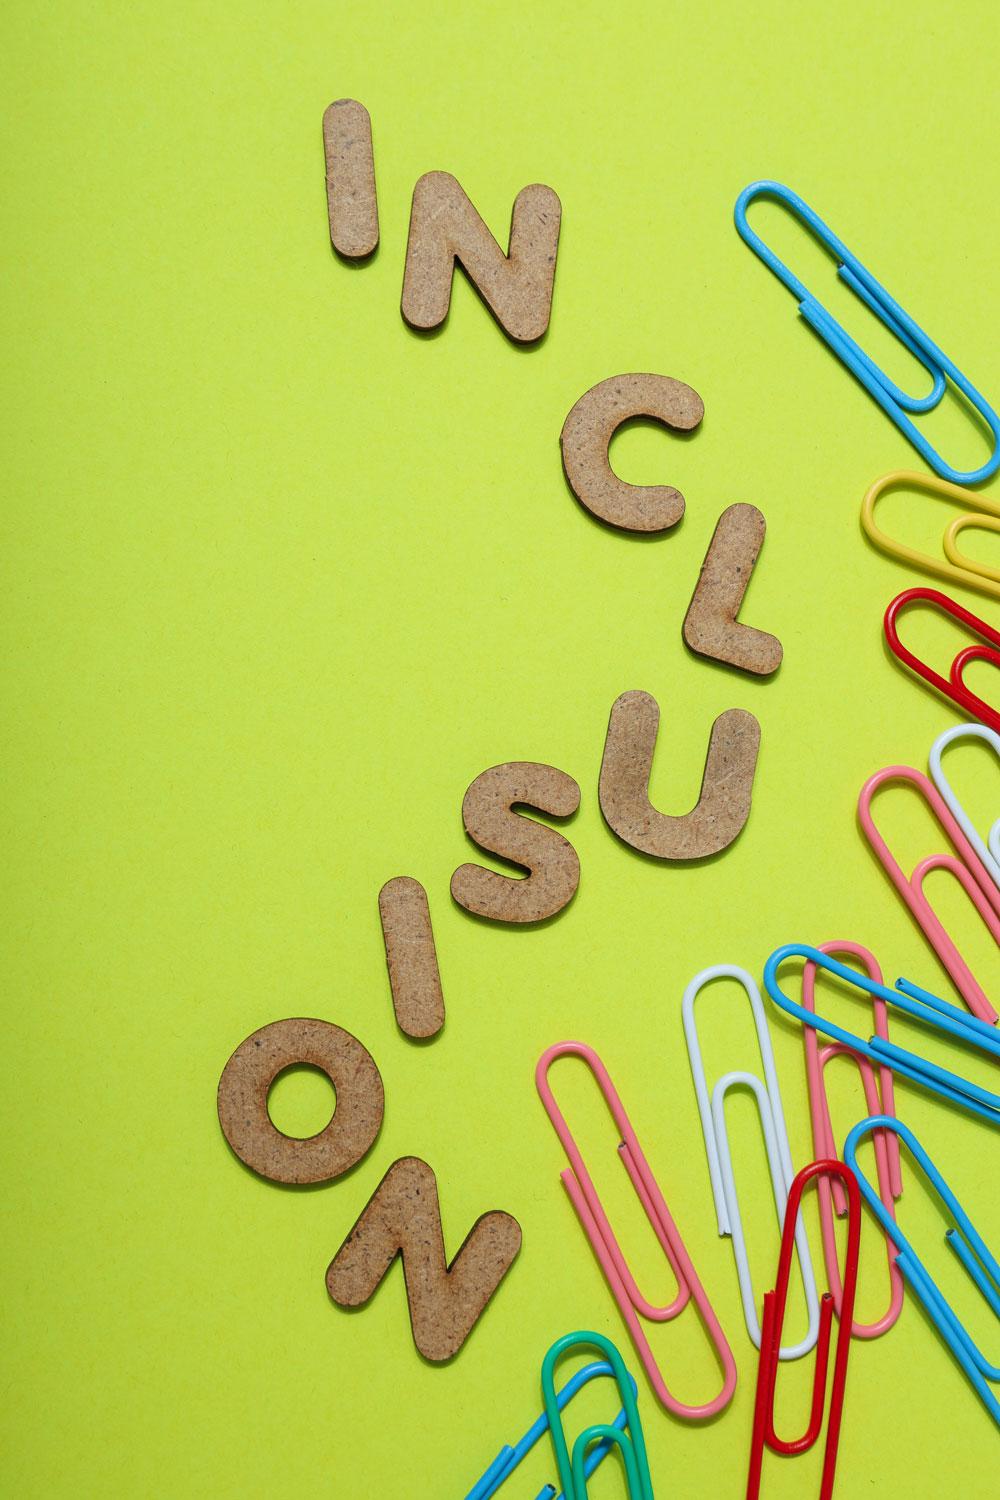 Inklusion-Foto, bestehend aus Buchstaben-Keksen, die "Inclusion" als Wort bilden und bunten Büroklammern auf gelbem Hintergrund.